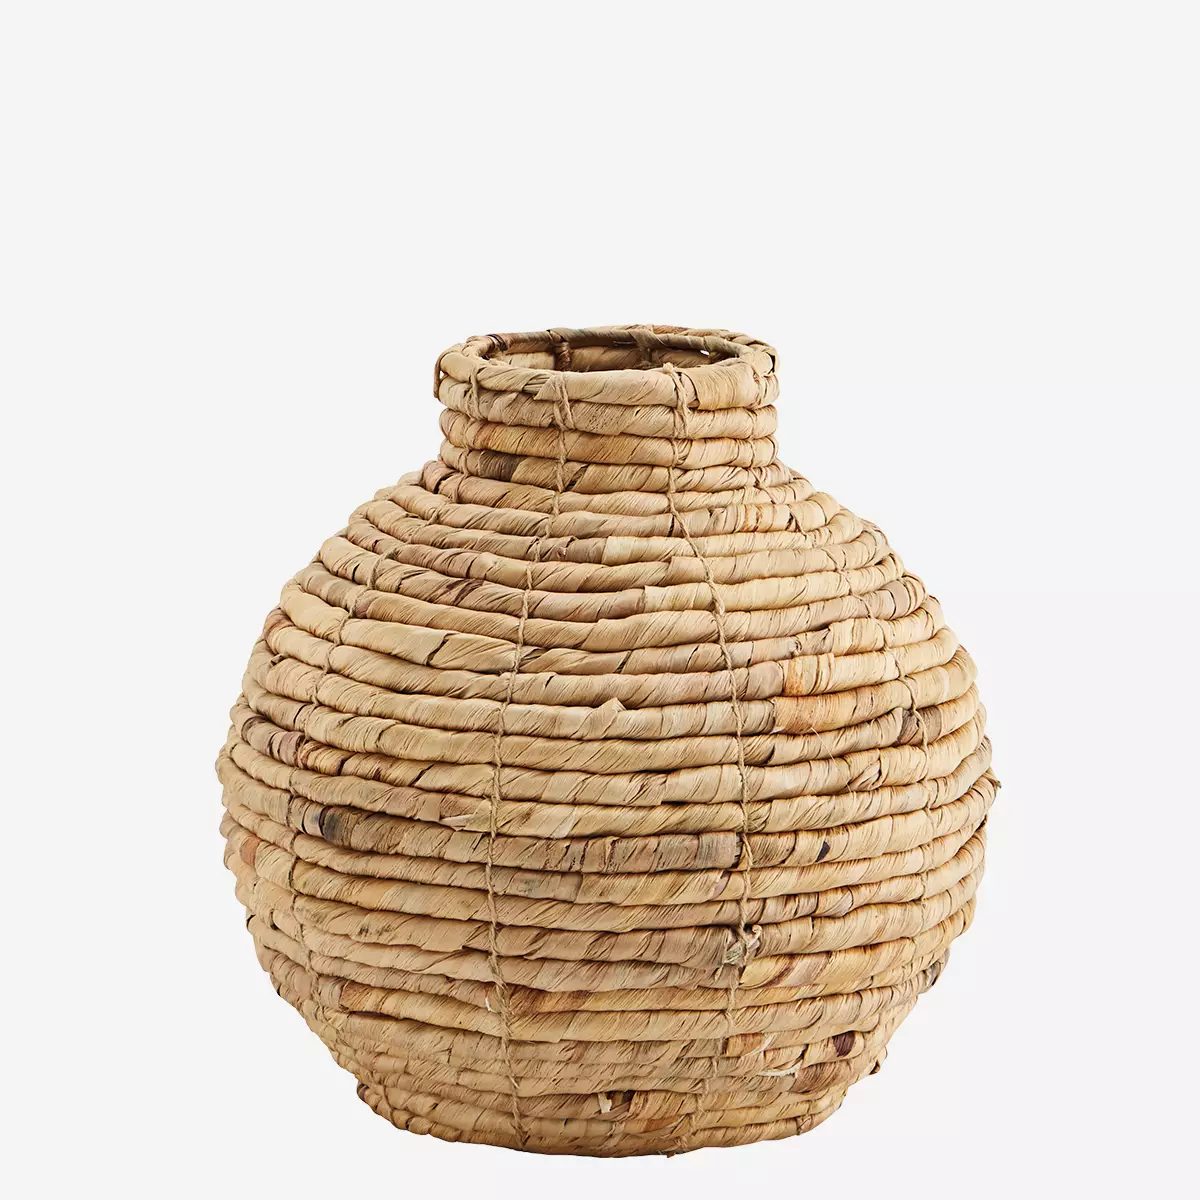 Vase-Korb_3x_30x30cm_1,225kg_15€